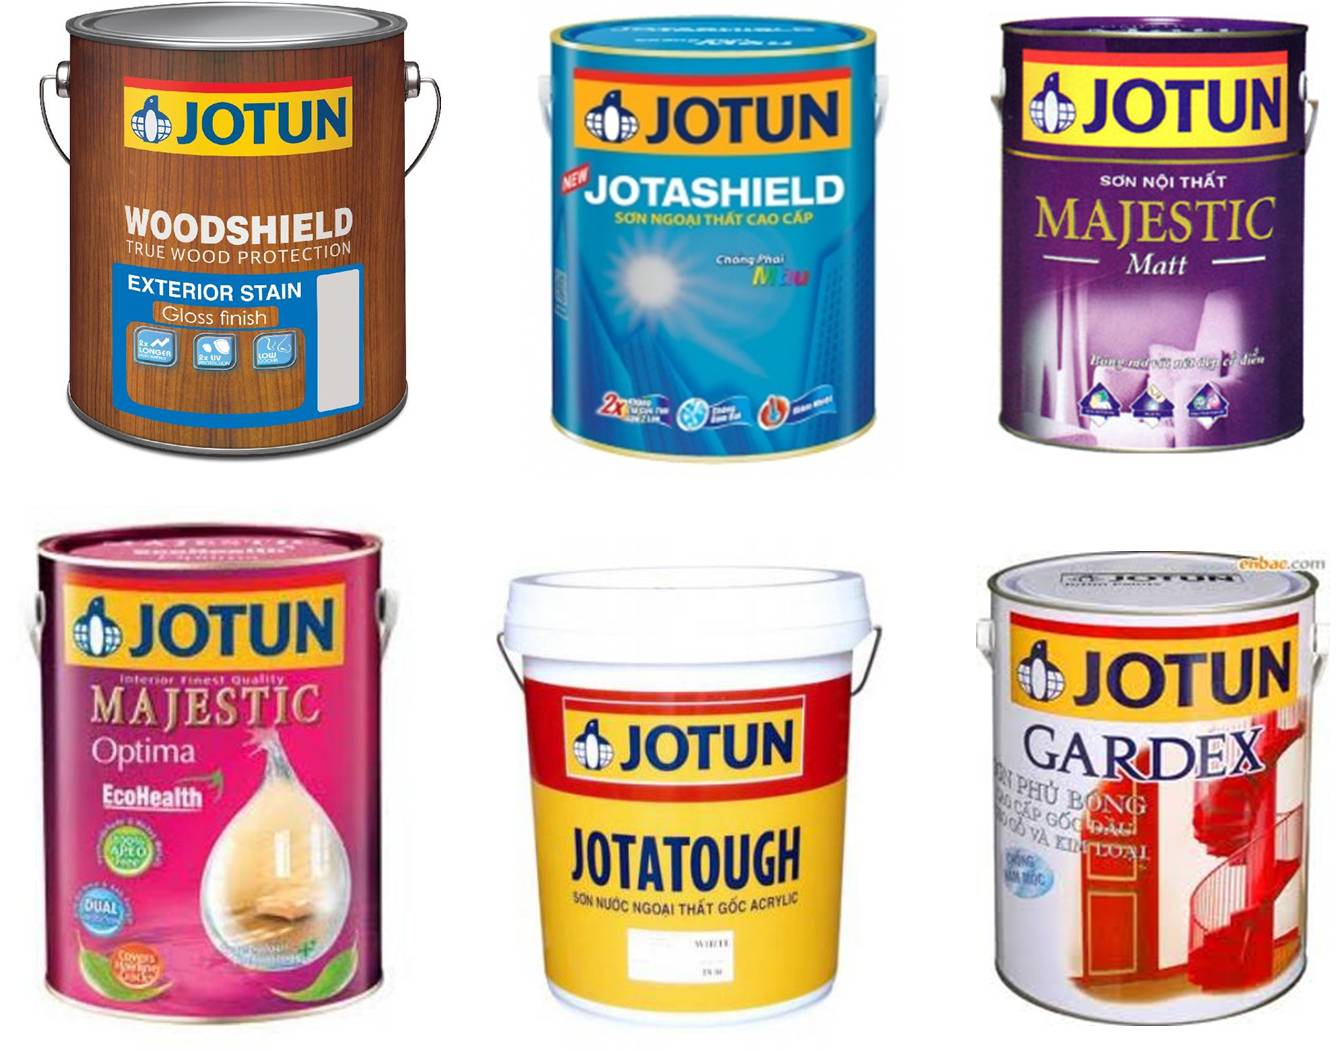 Với sơn Jotun, bạn sẽ có một lớp sơn chất lượng cao, bảo vệ tối đa và mang đến một màu sắc tươi sáng cho nhà cửa của bạn. Hãy xem hình ảnh liên quan để cảm nhận rõ hơn về sự đẳng cấp của sơn Jotun.